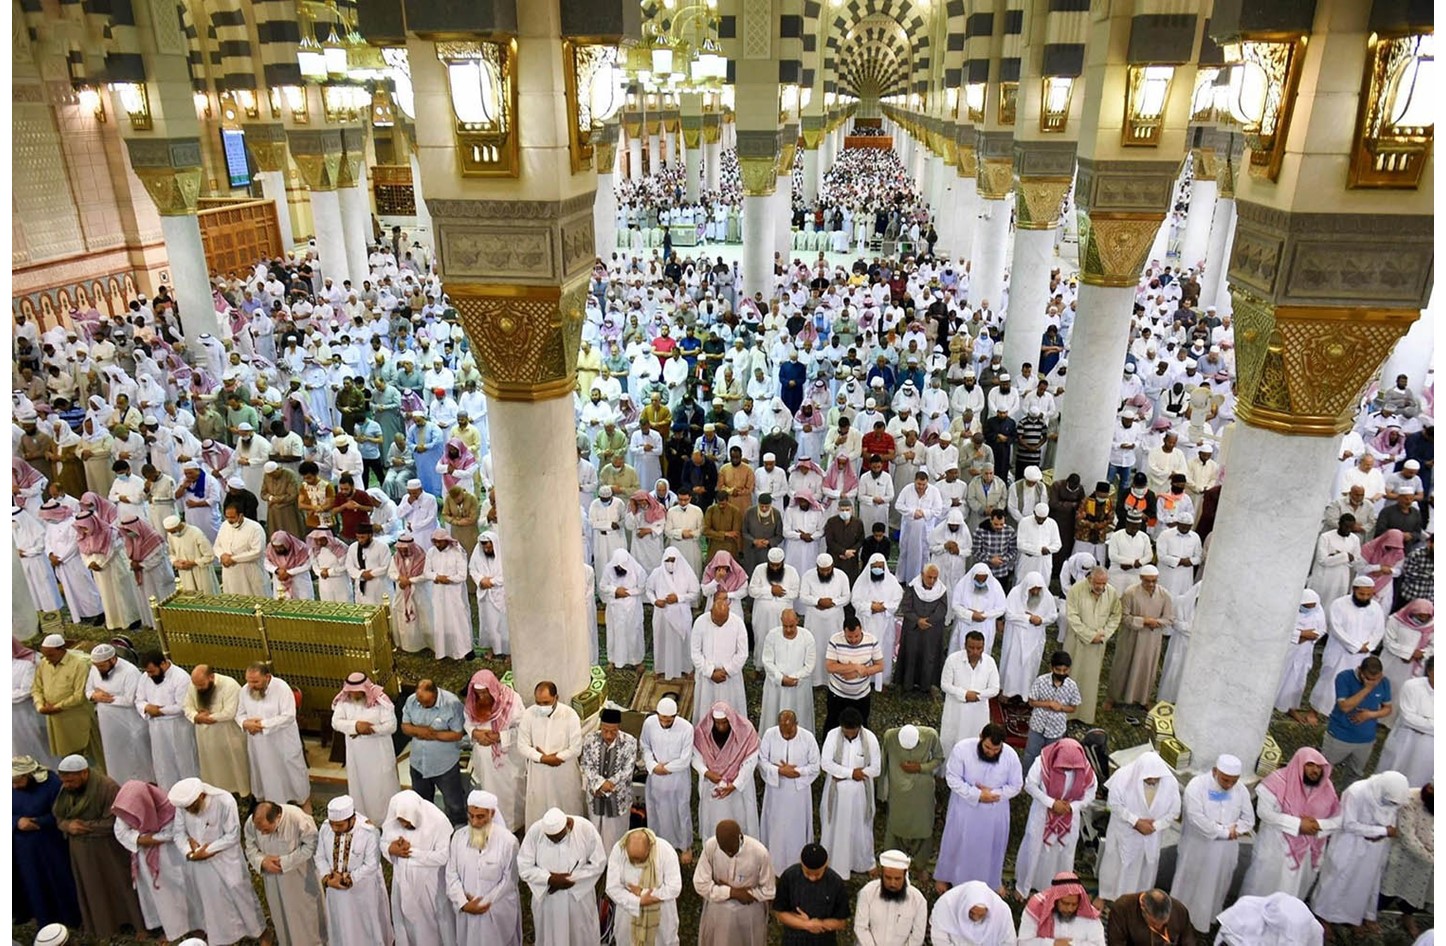 المسجد النبوى يستقبل أكثر من ستة ملايين مصل خلال الأسبوع الماضى